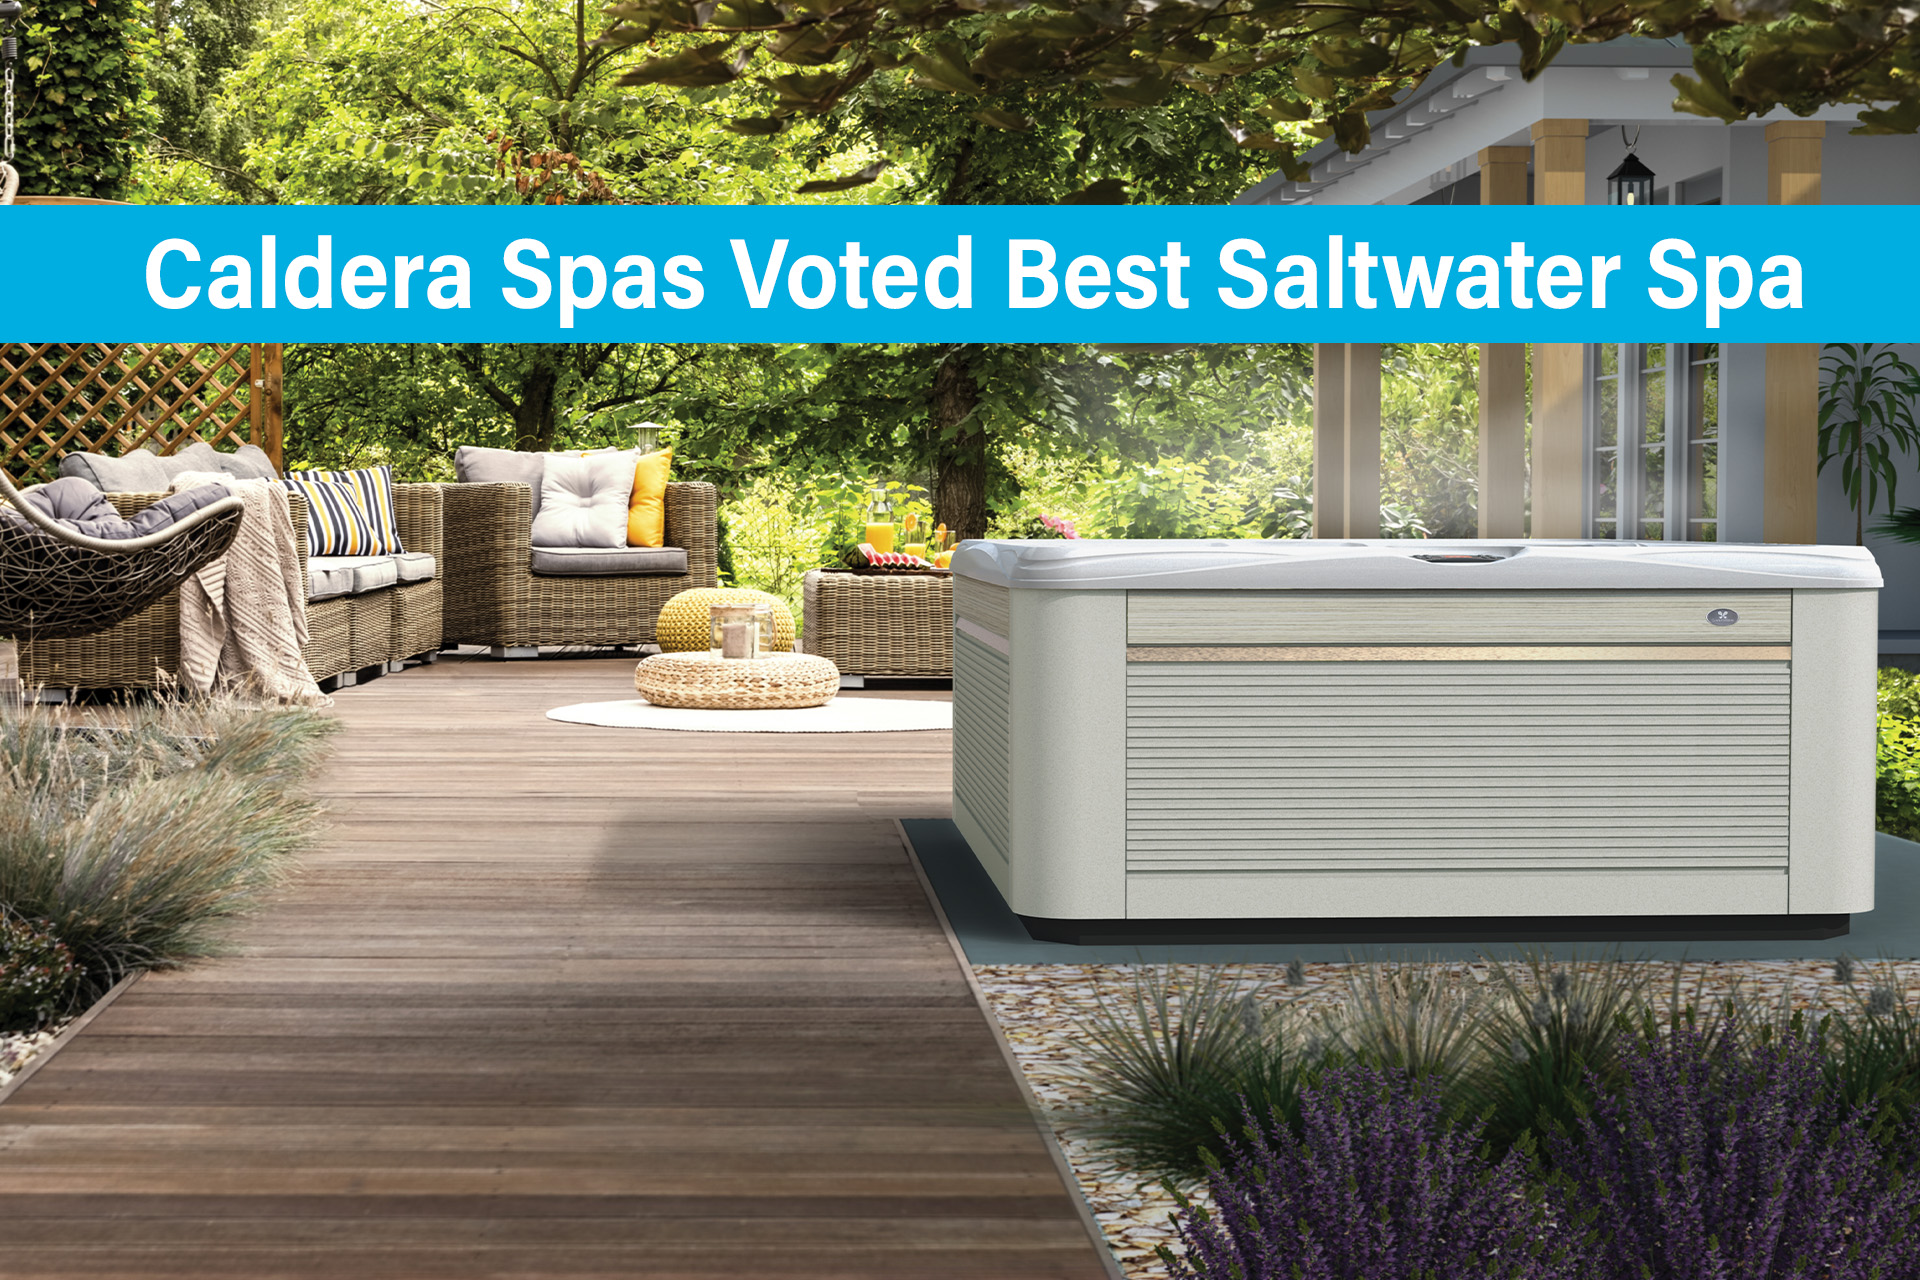 Caldera Spas Voted Best Saltwater Spa